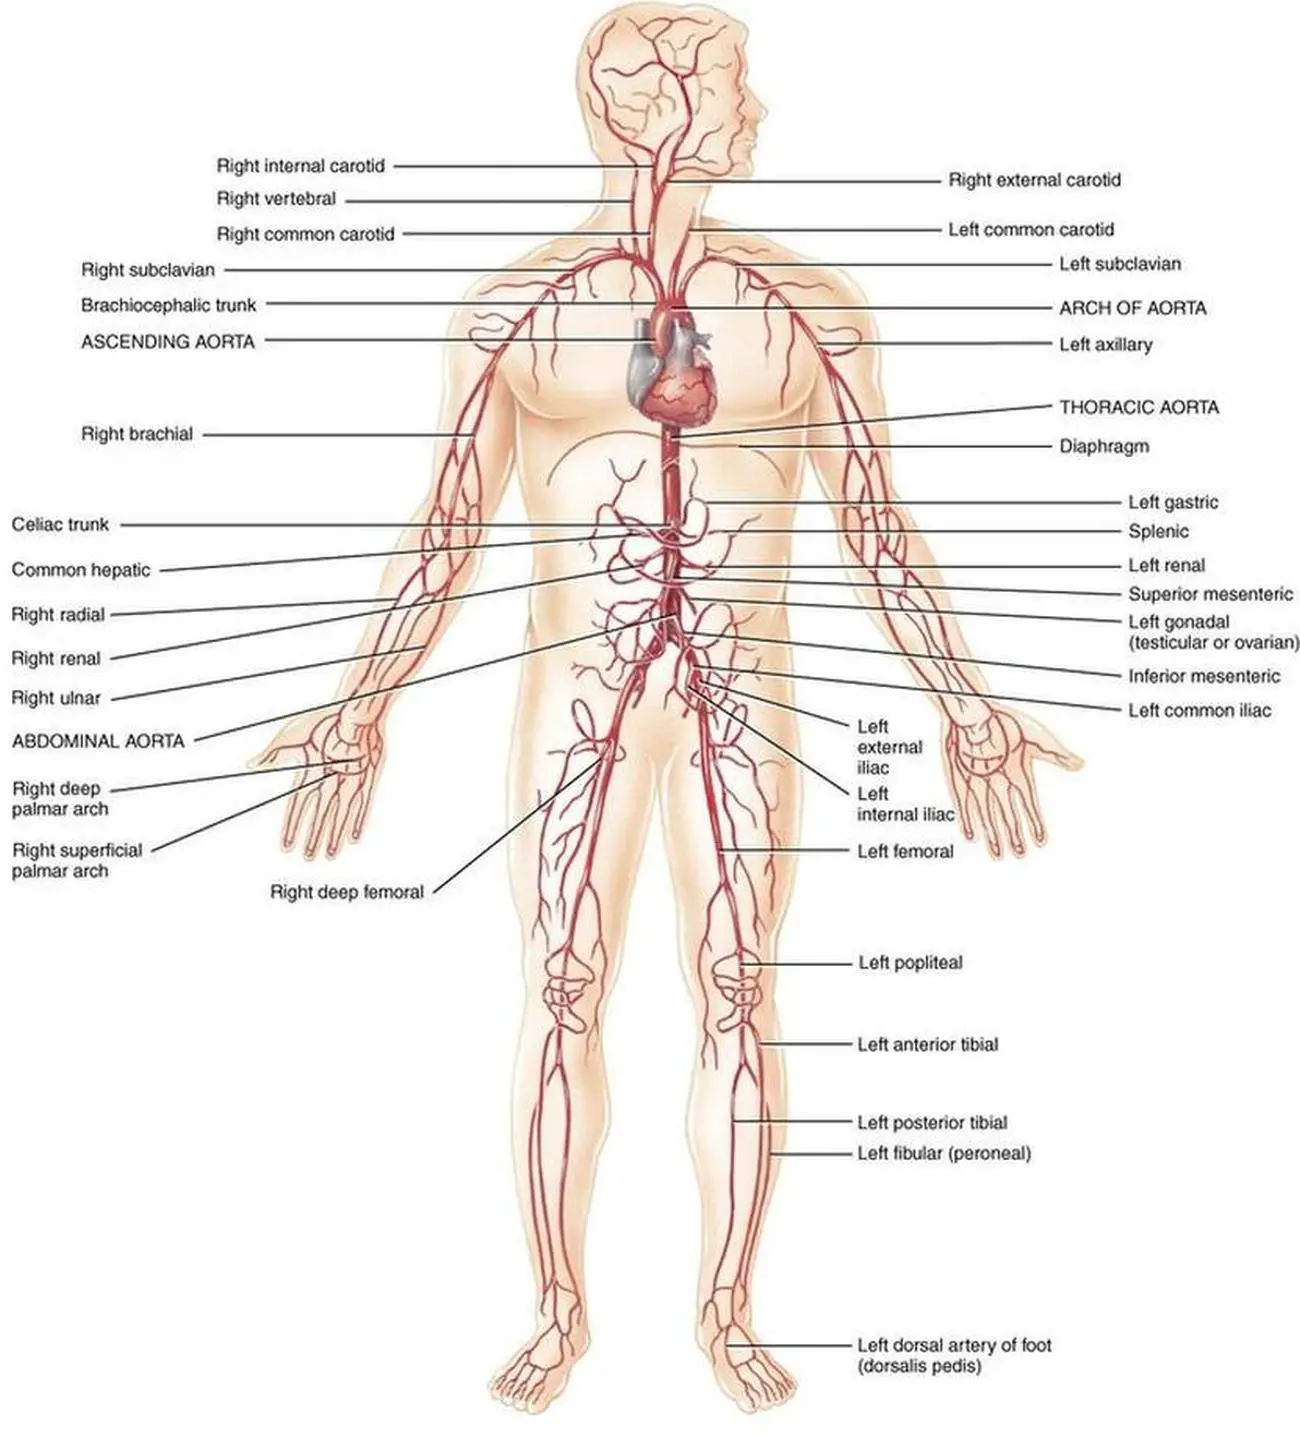 Pictures Of Brachiocephalic Artery